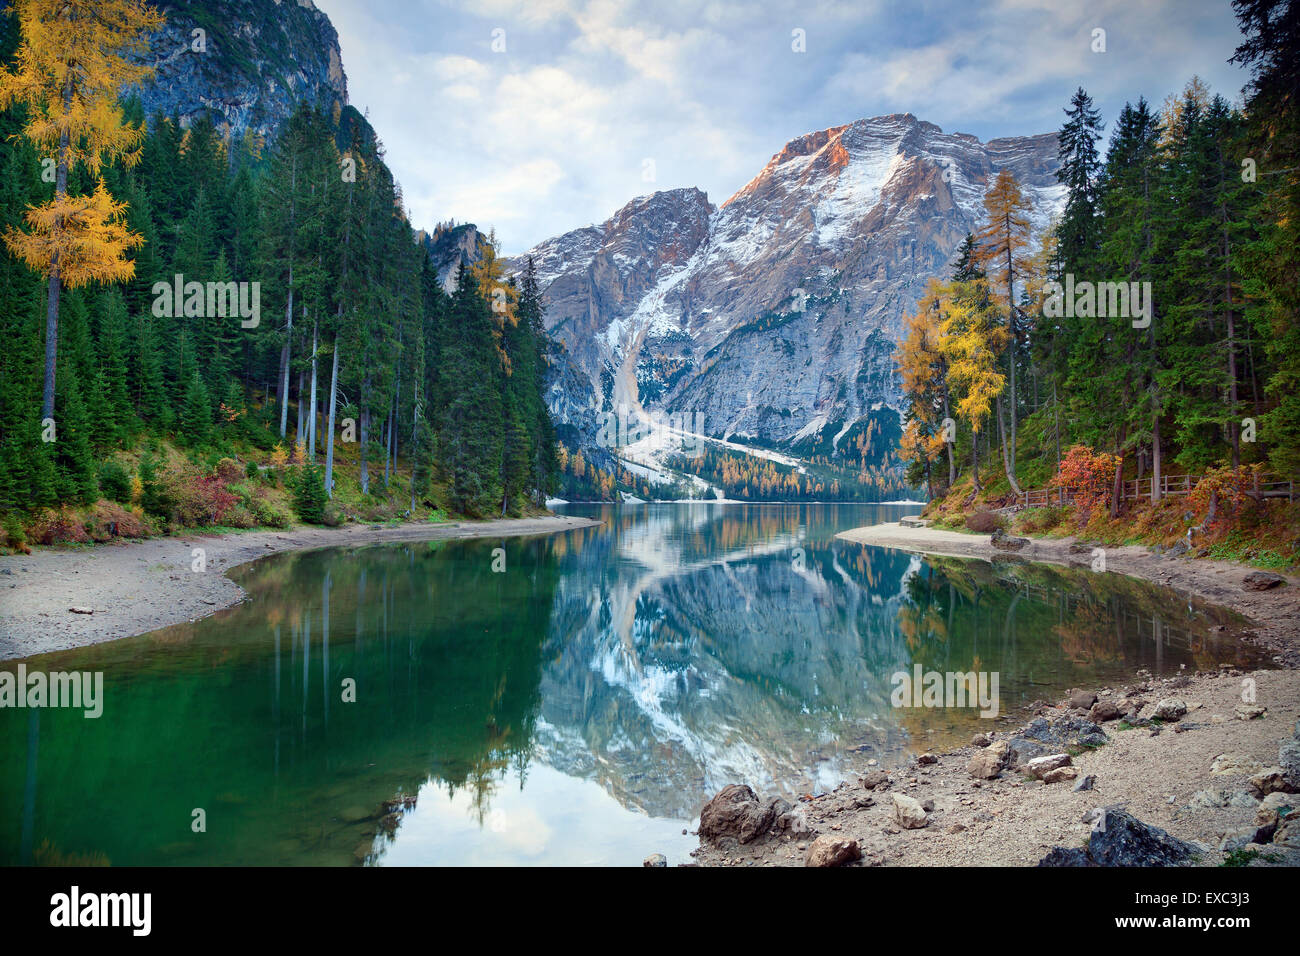 Herbst in den Alpen. Idyllischer See umgeben von bunten Wald in den italienischen Alpen während Herbstmorgen. Stockfoto